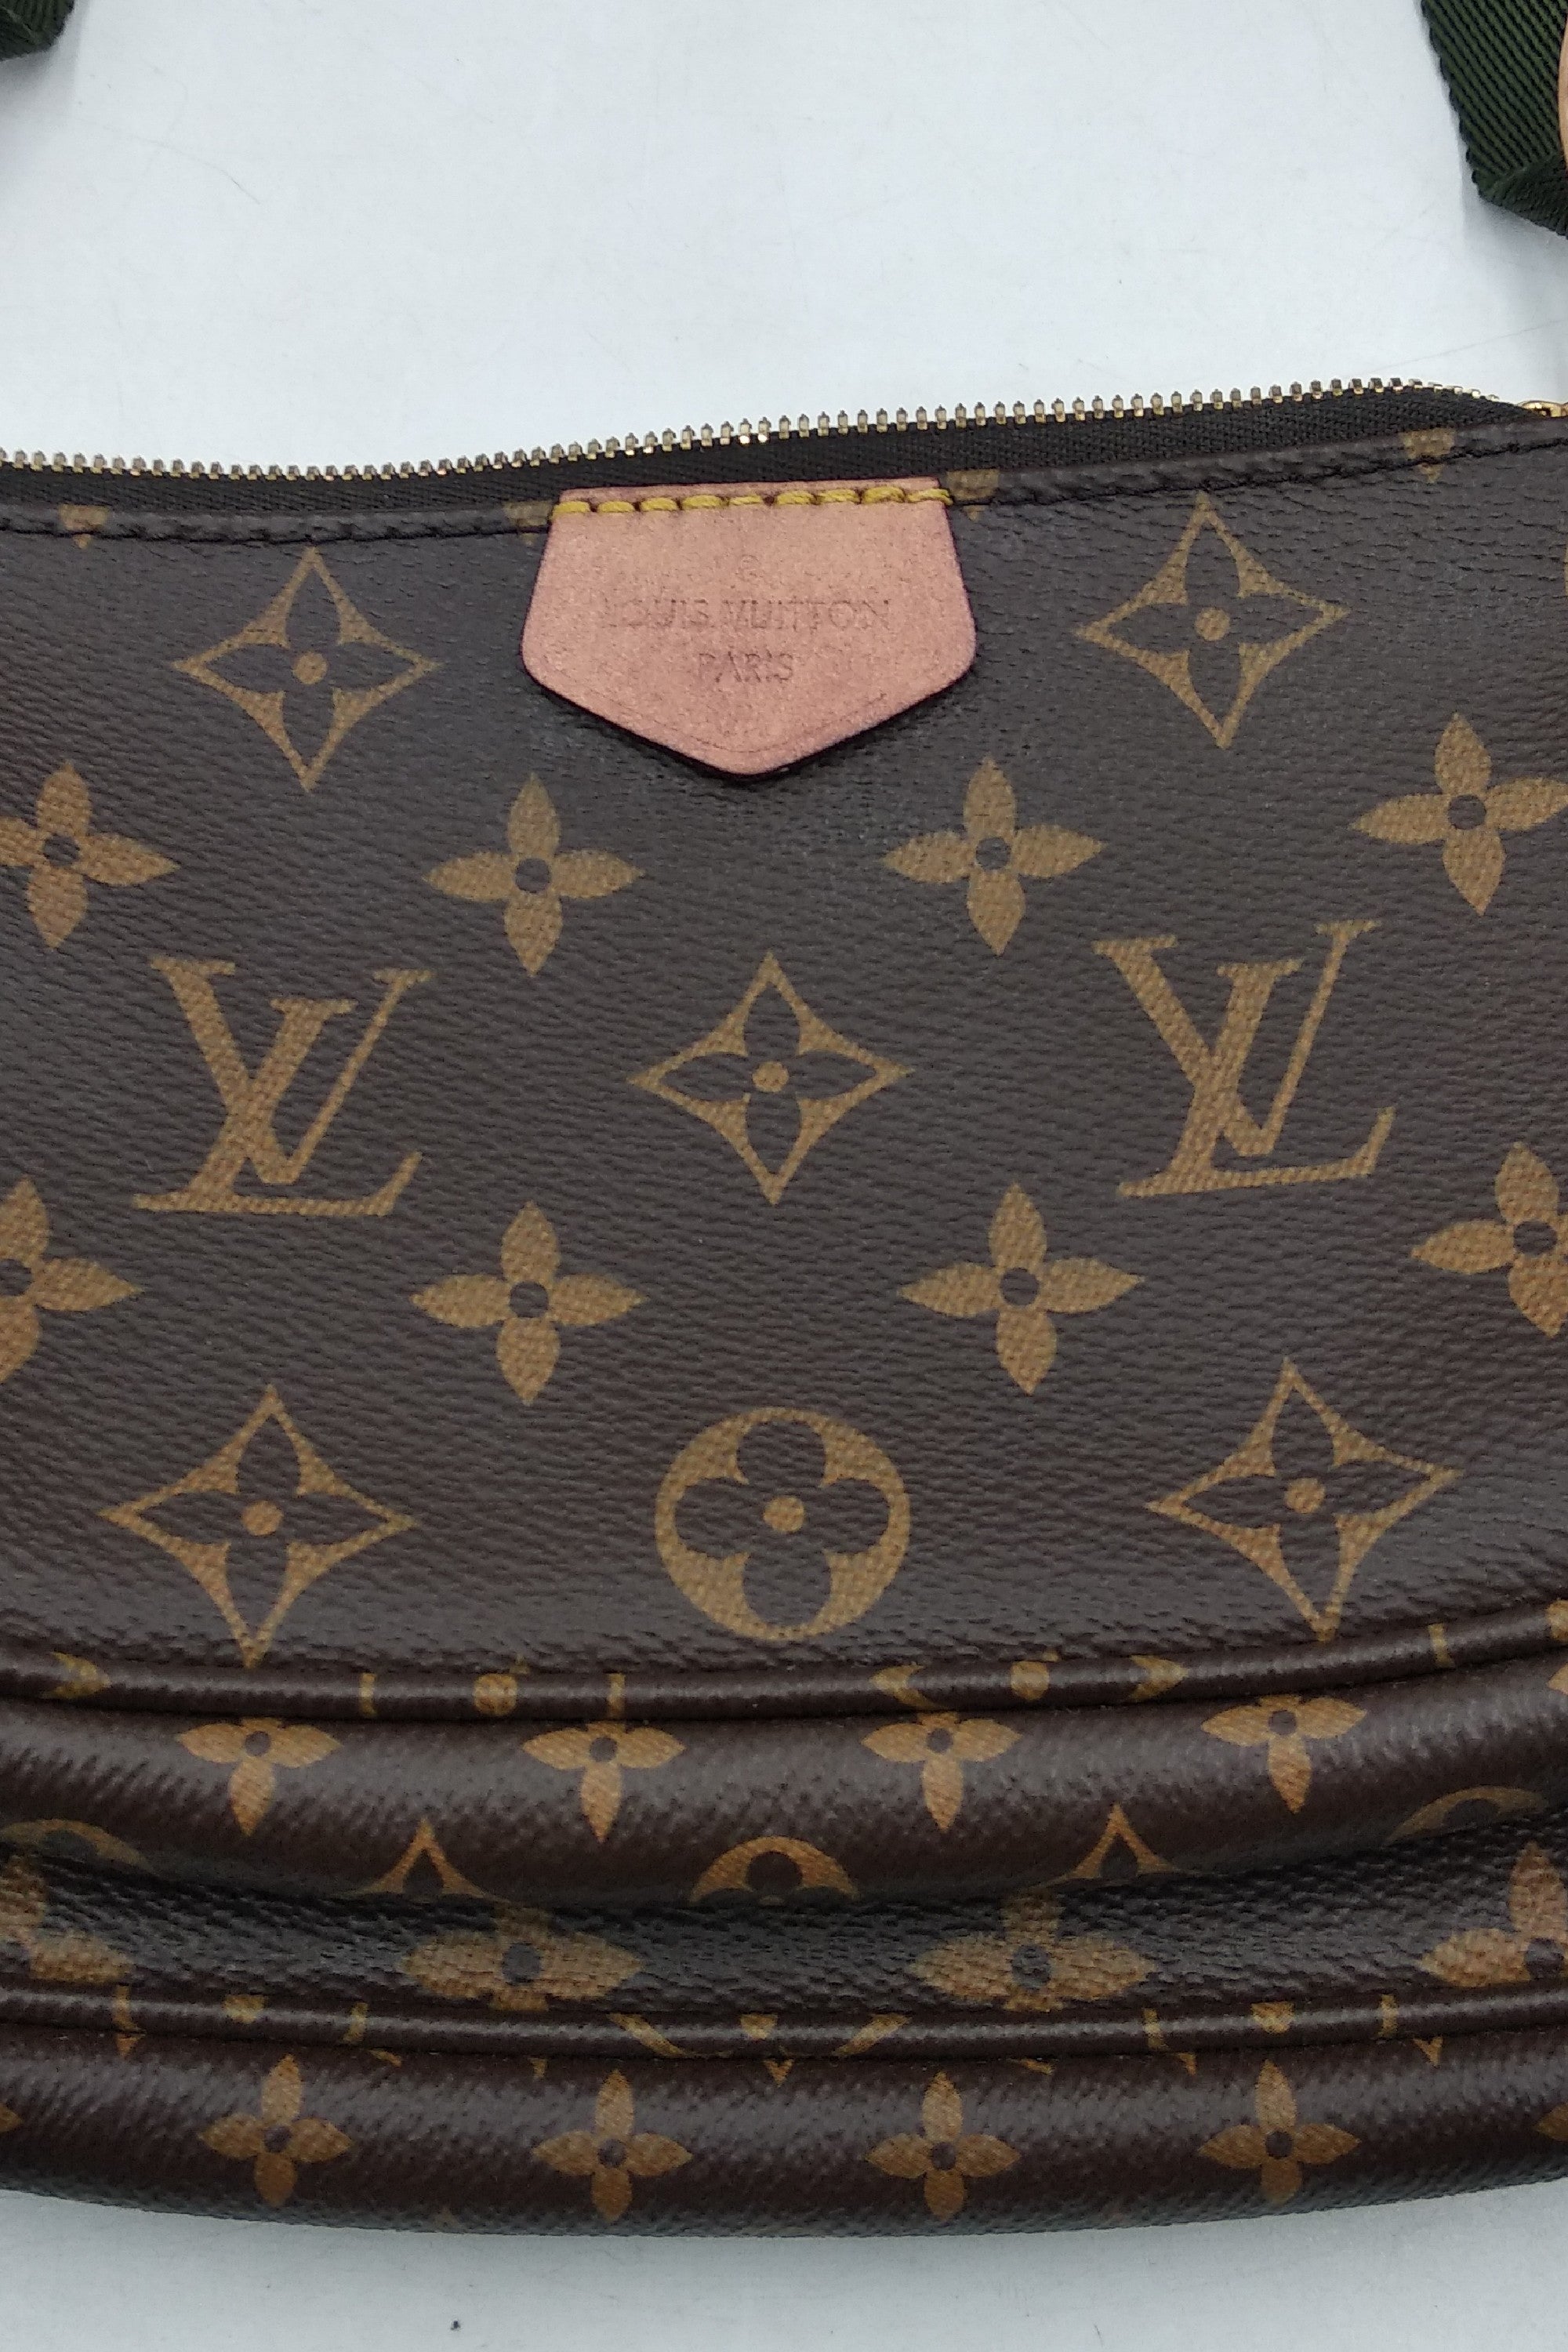 Louis Vuitton Multi Pochette Accessoires Monogram Canvas Brown 2357431